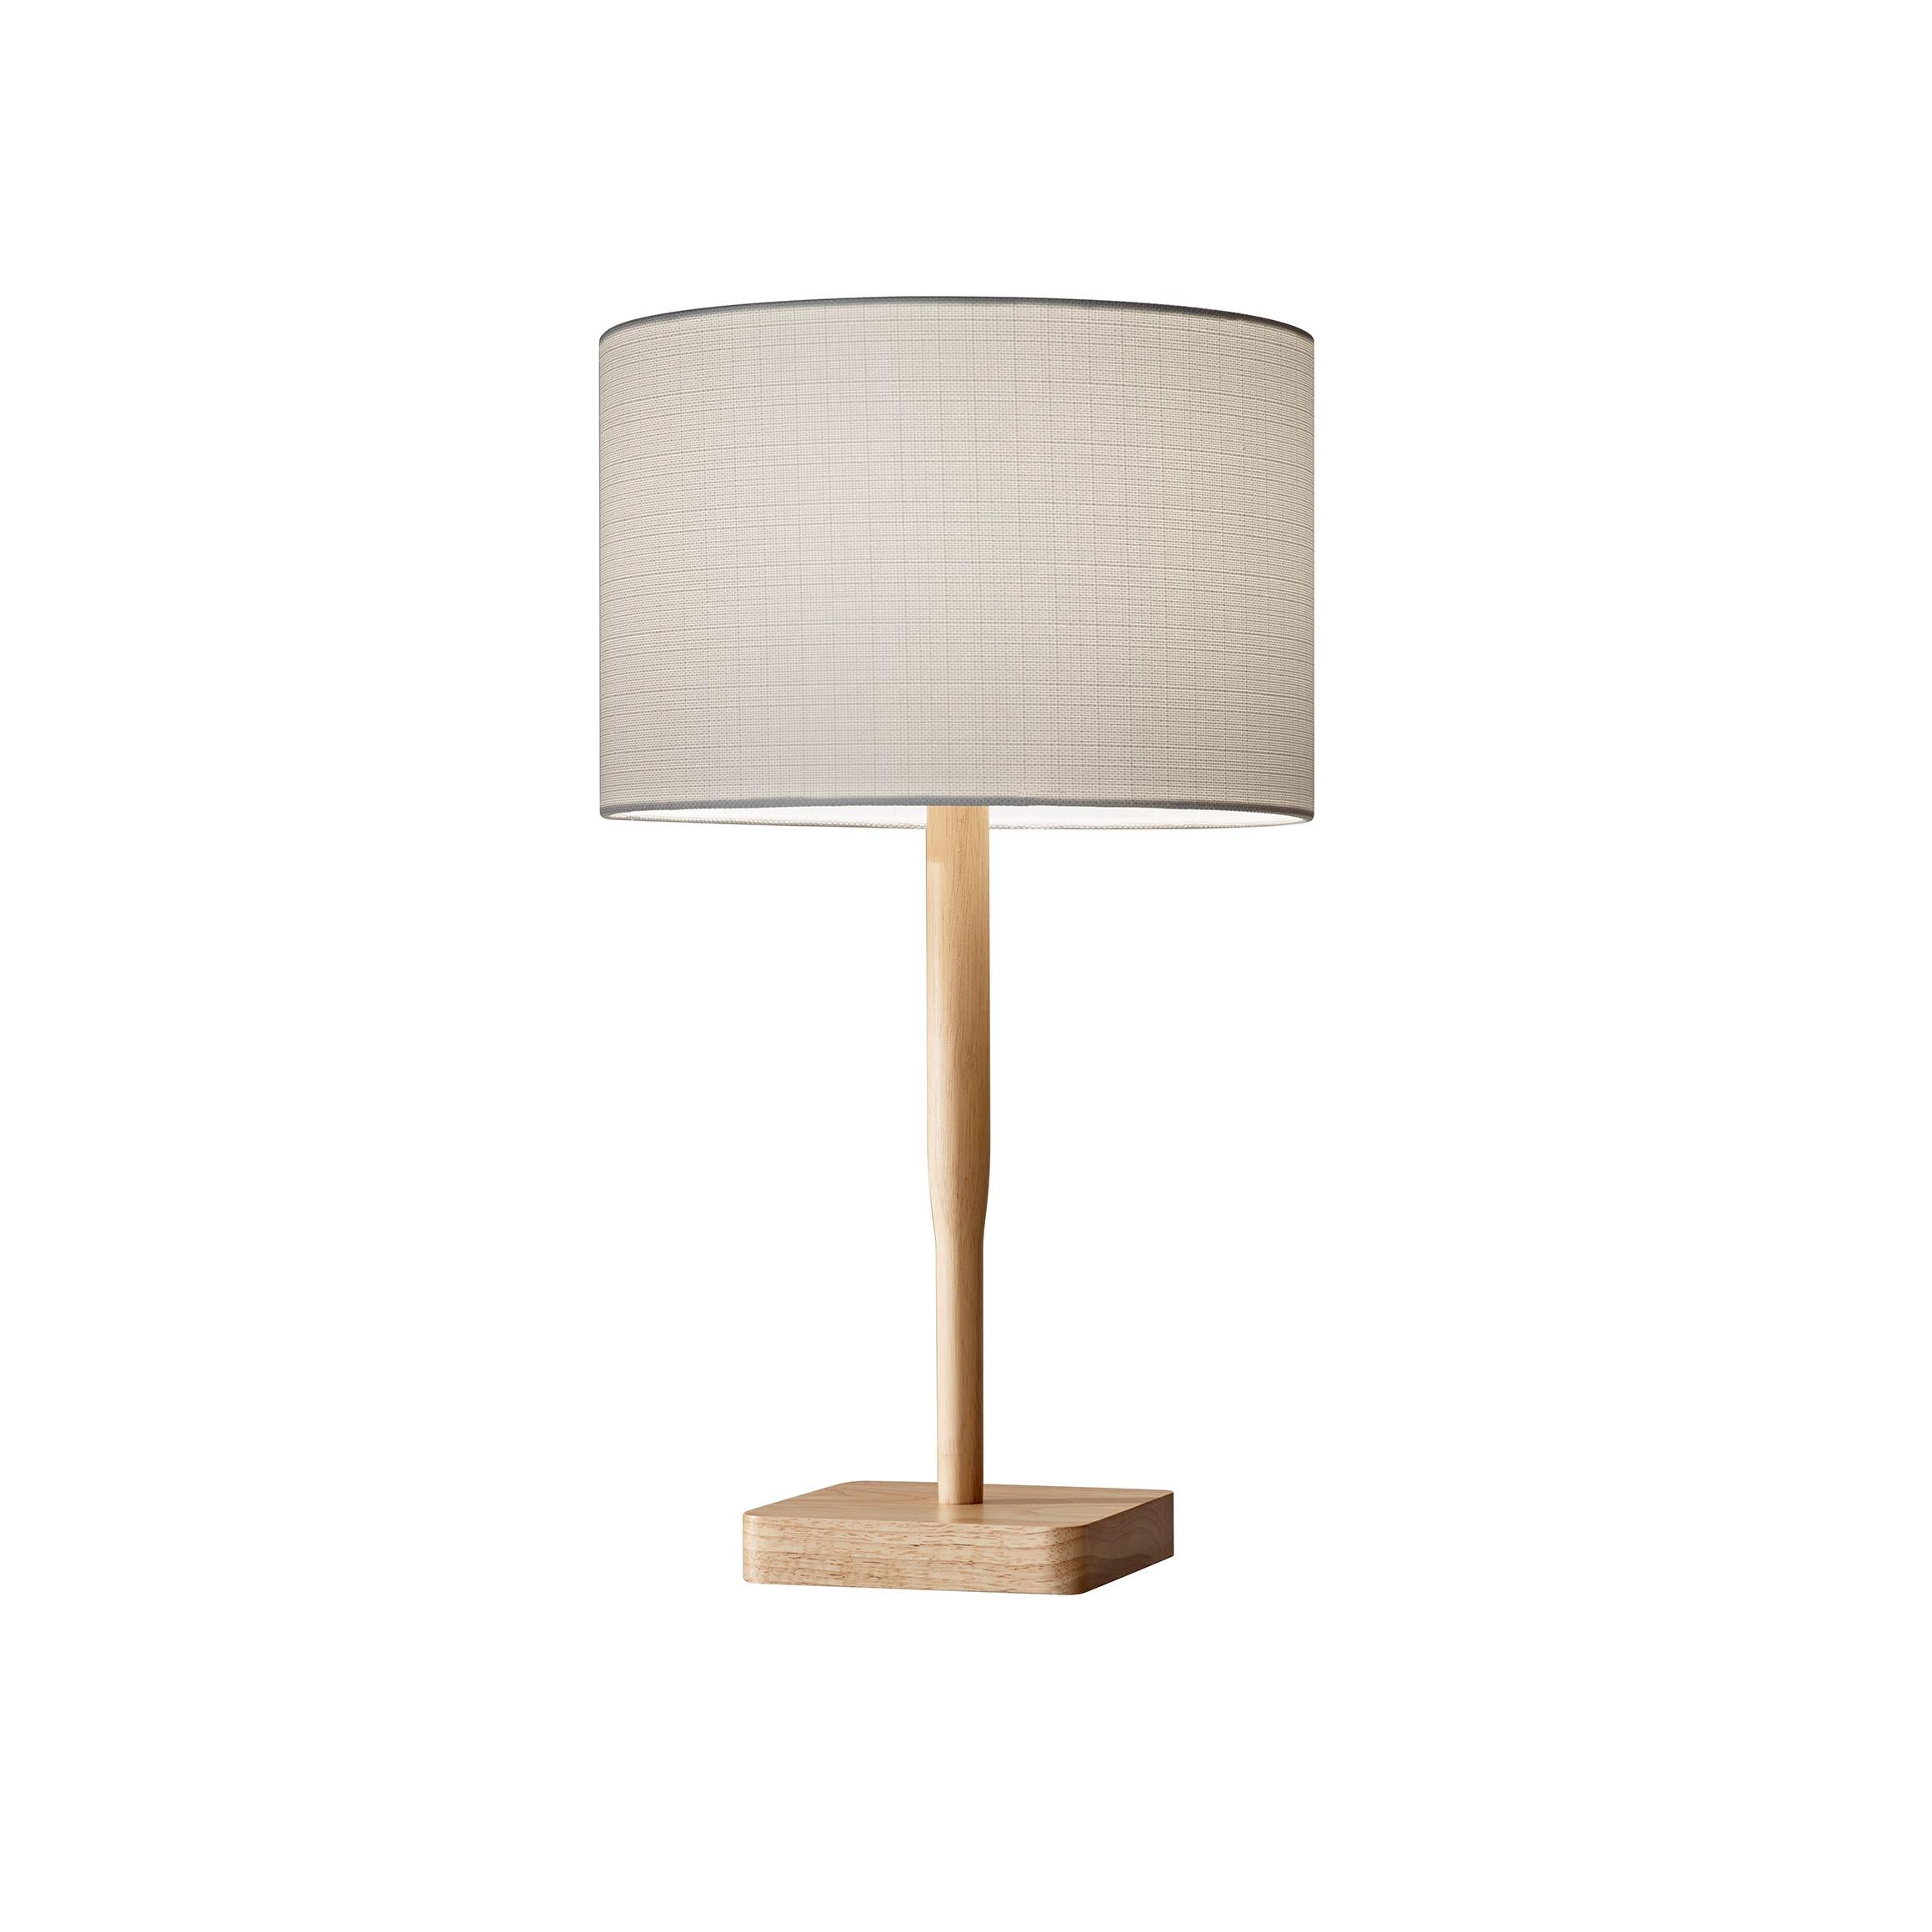 ELLIS Lampe sur table Bois - 4092-12 | ADESSO